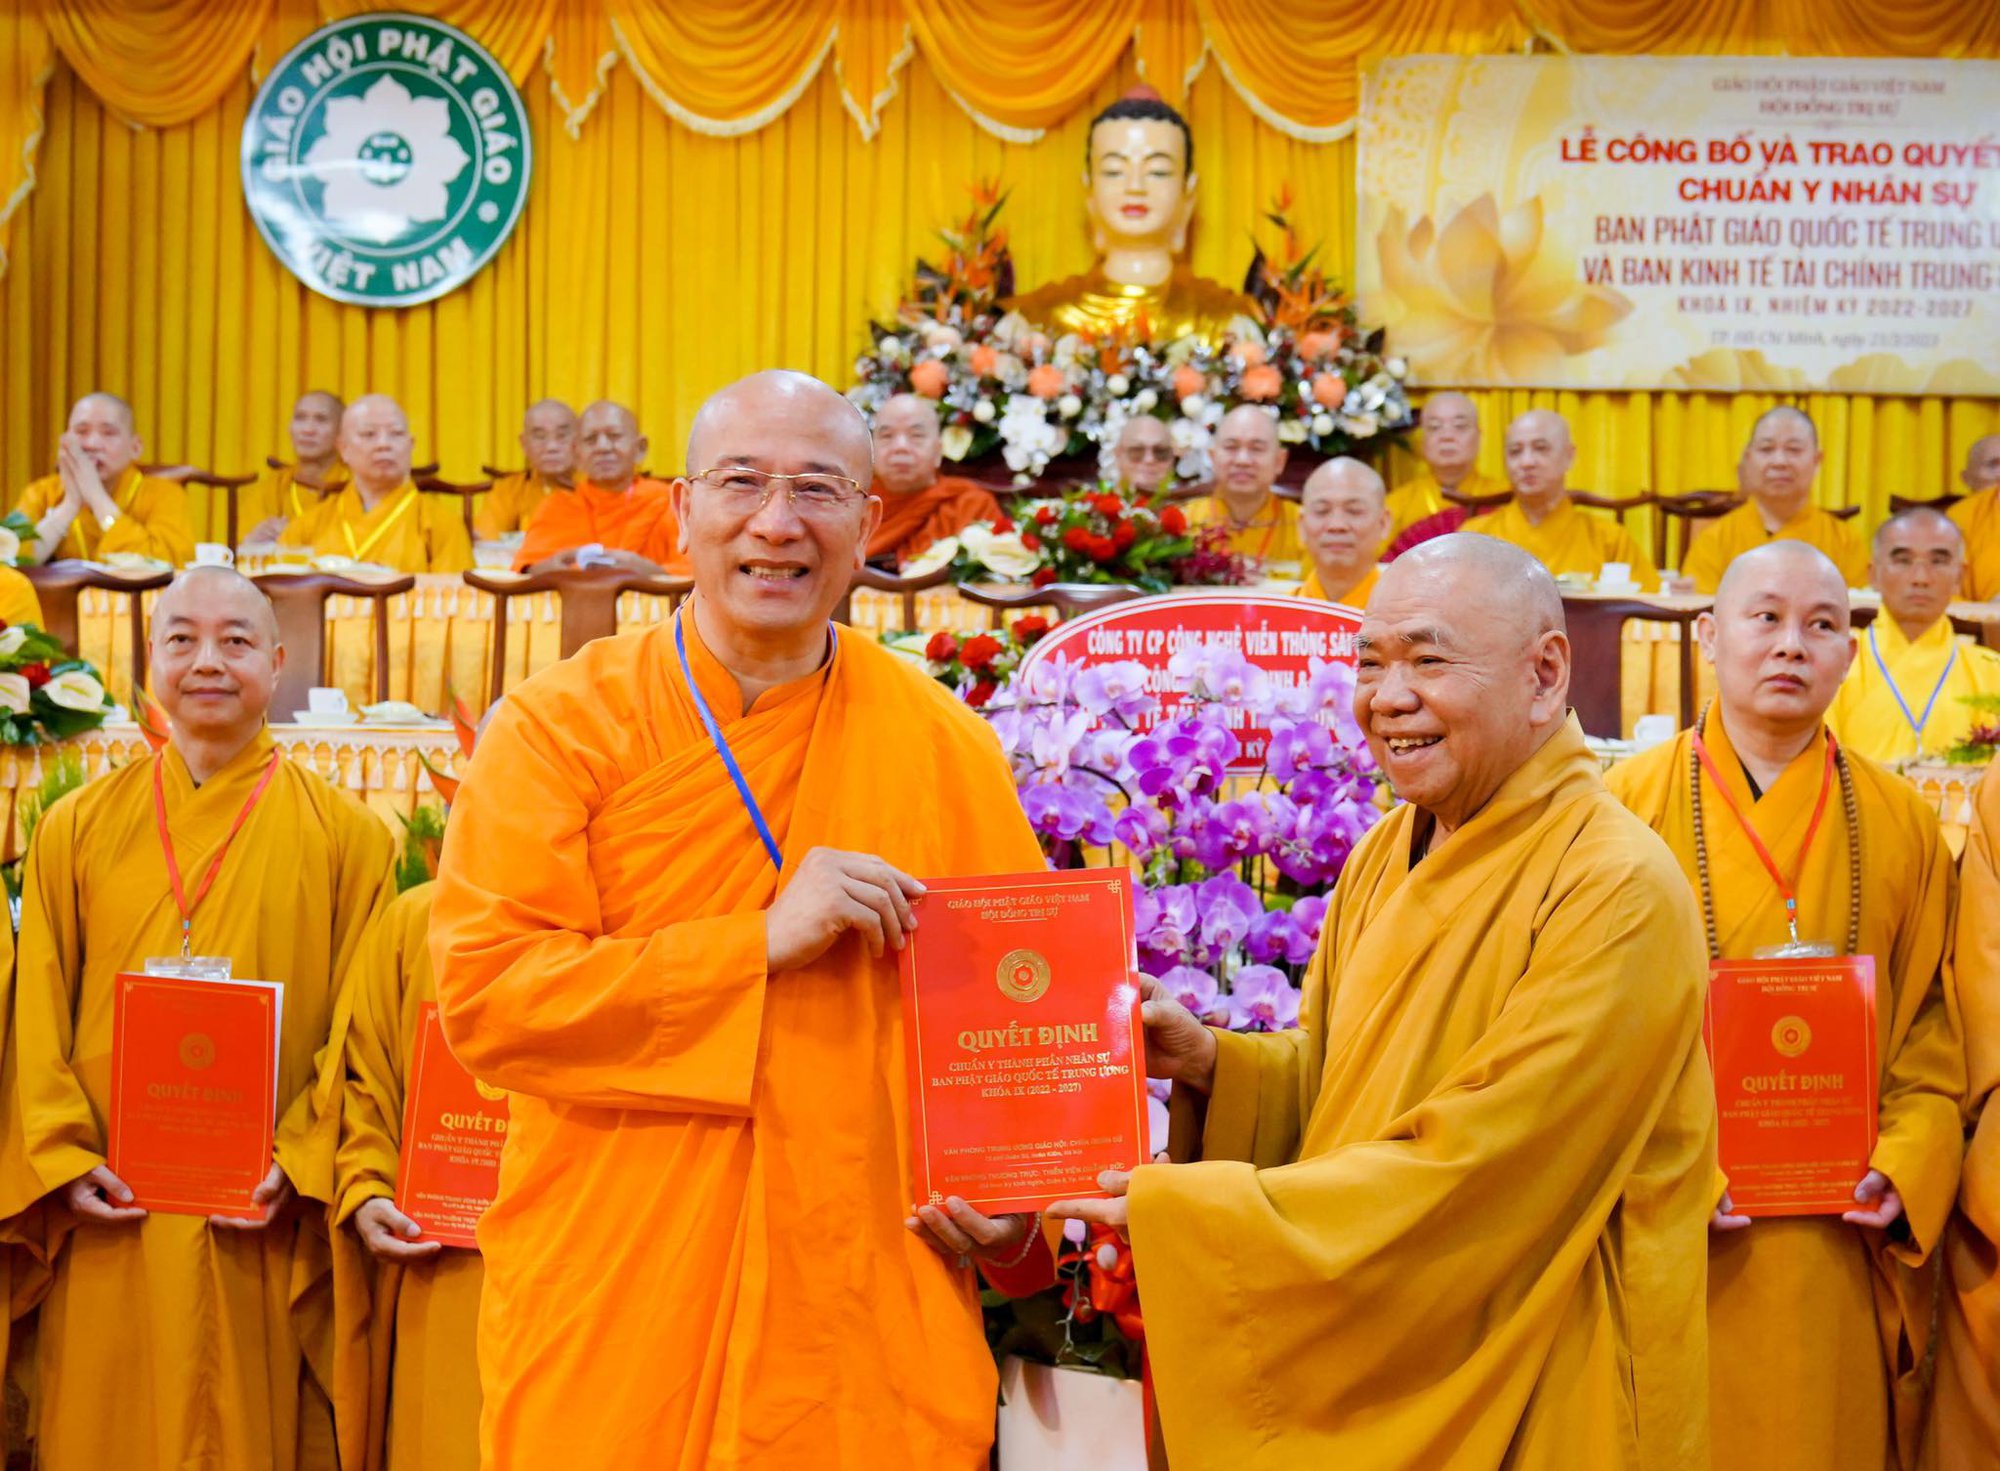 Đại Đức Thích Trúc Thái Minh nhận chức Phó trưởng Ban Phật Giáo Quốc tế Trung Ương  - Ảnh 2.